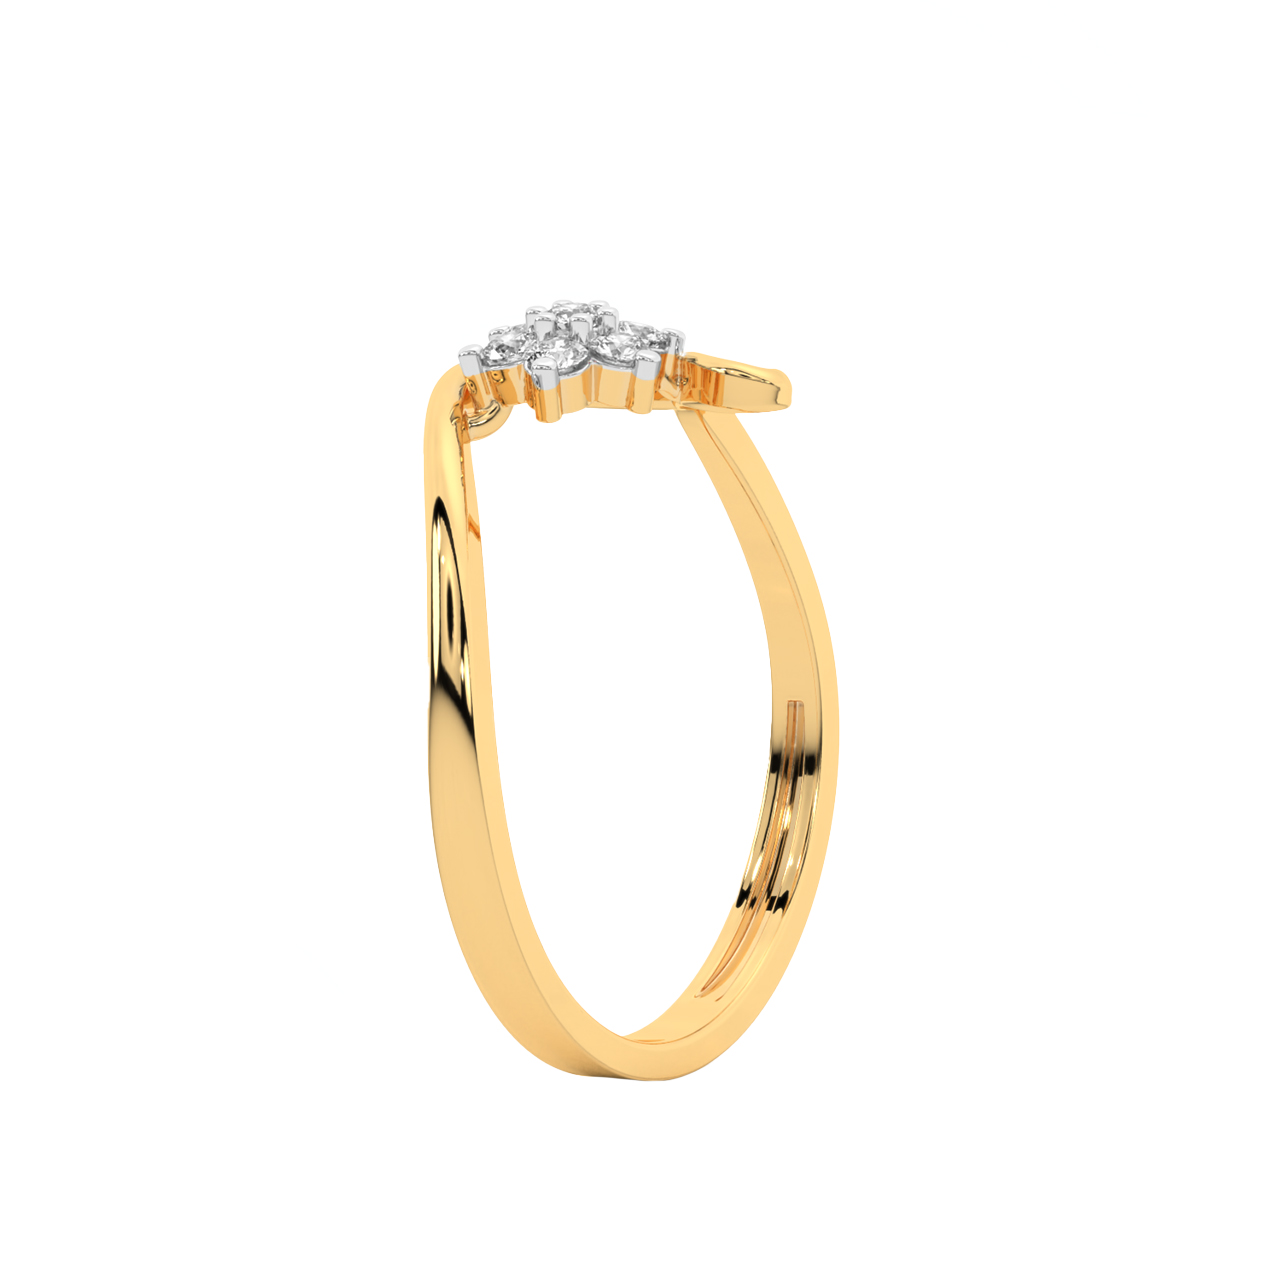 Silver Pearl & Diamond Ring - 84179SJADSSSLRG – Seita Jewelers